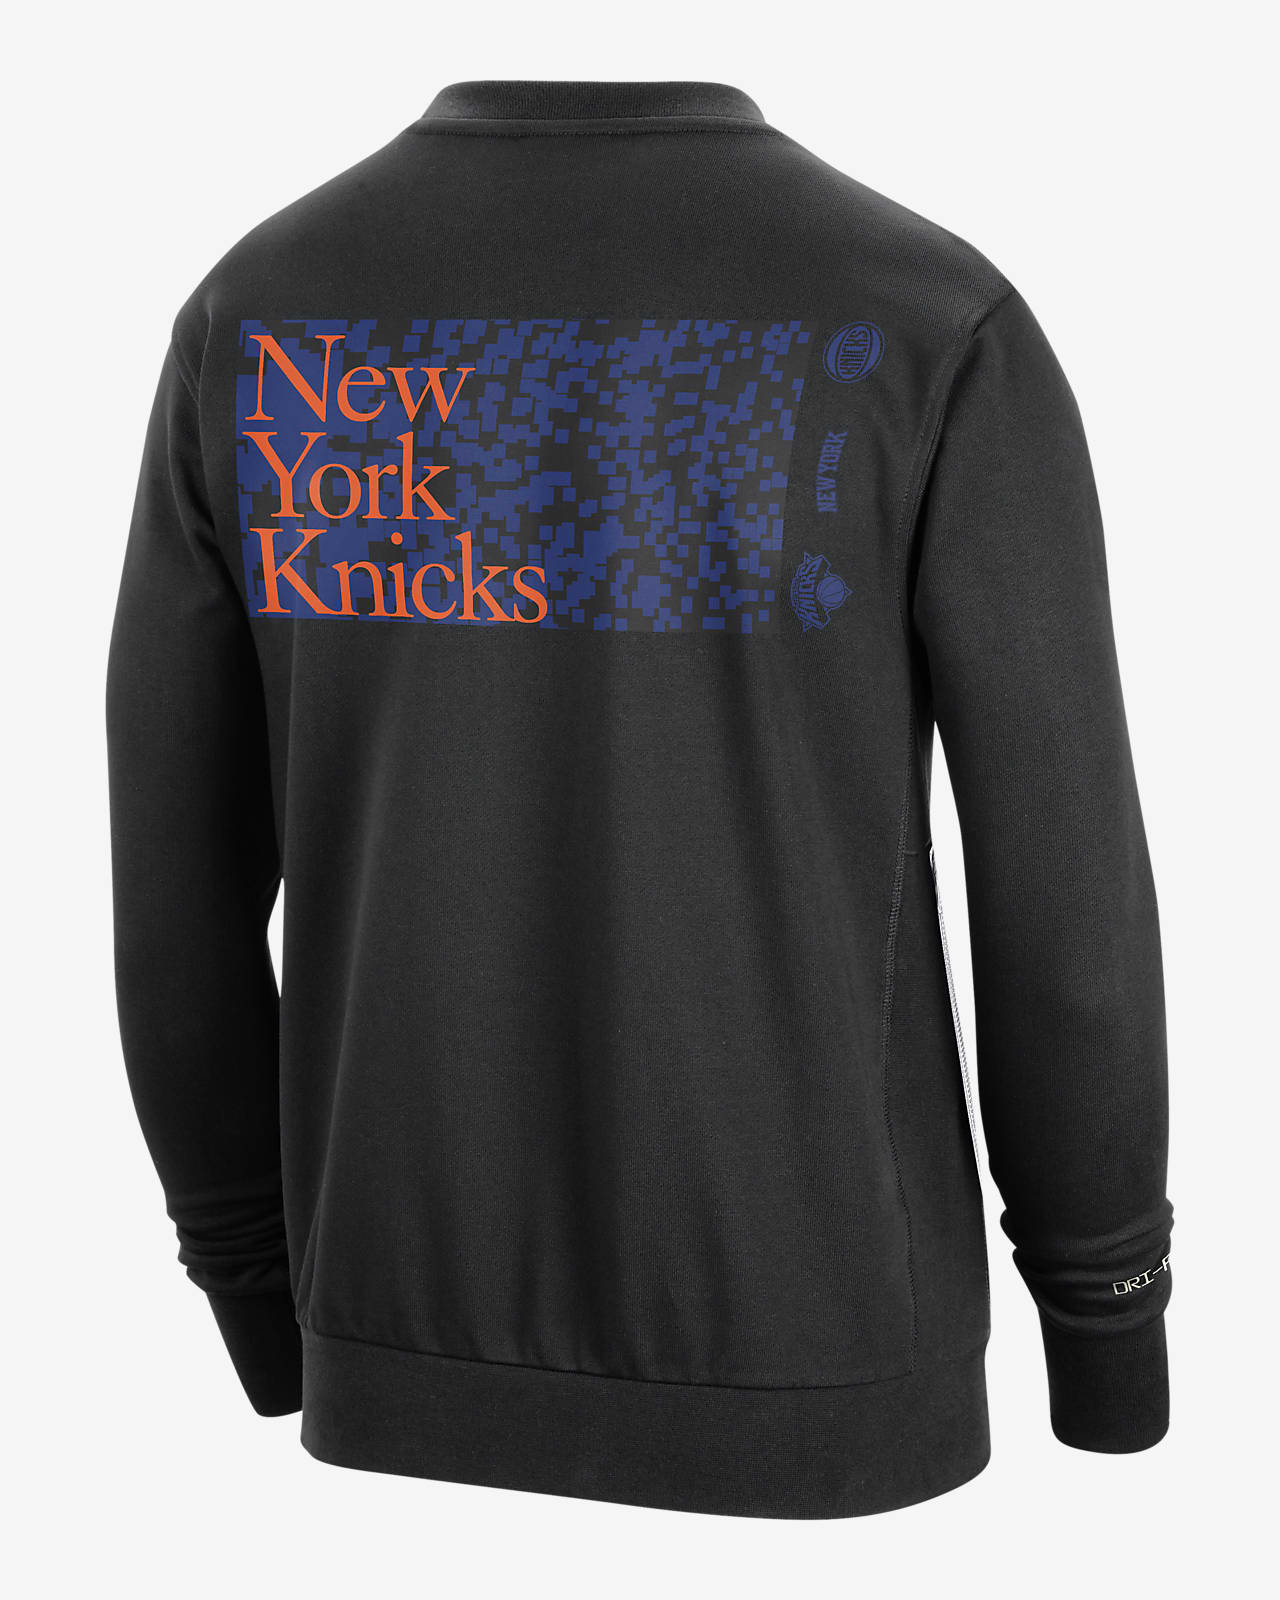 New York Knicks Standard Issue Men's Nike Dri-FIT NBA Crew-Neck Sweatshirt